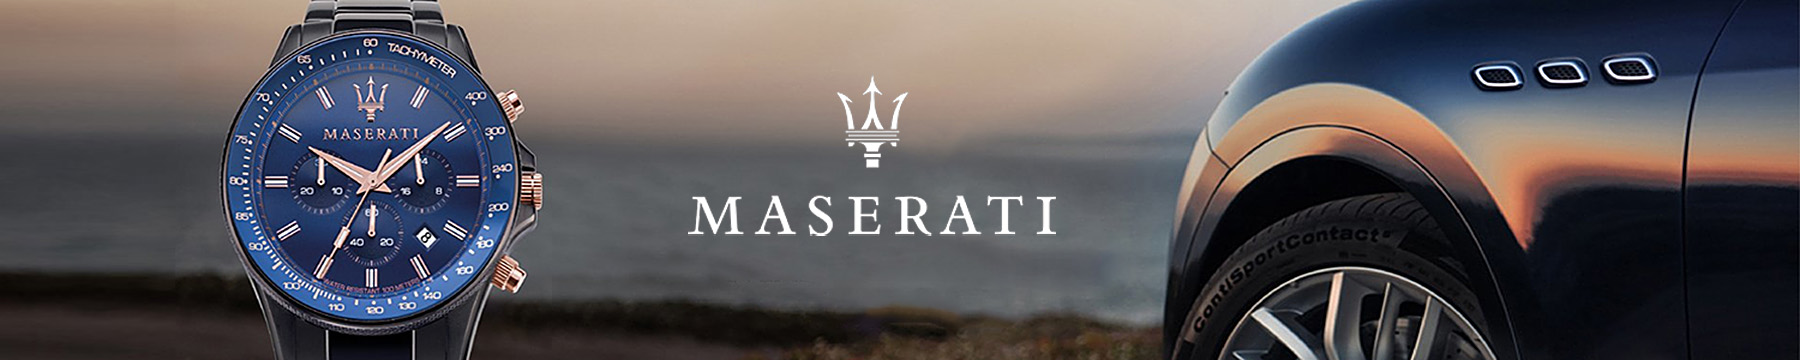 Maserati - Clachic.gr